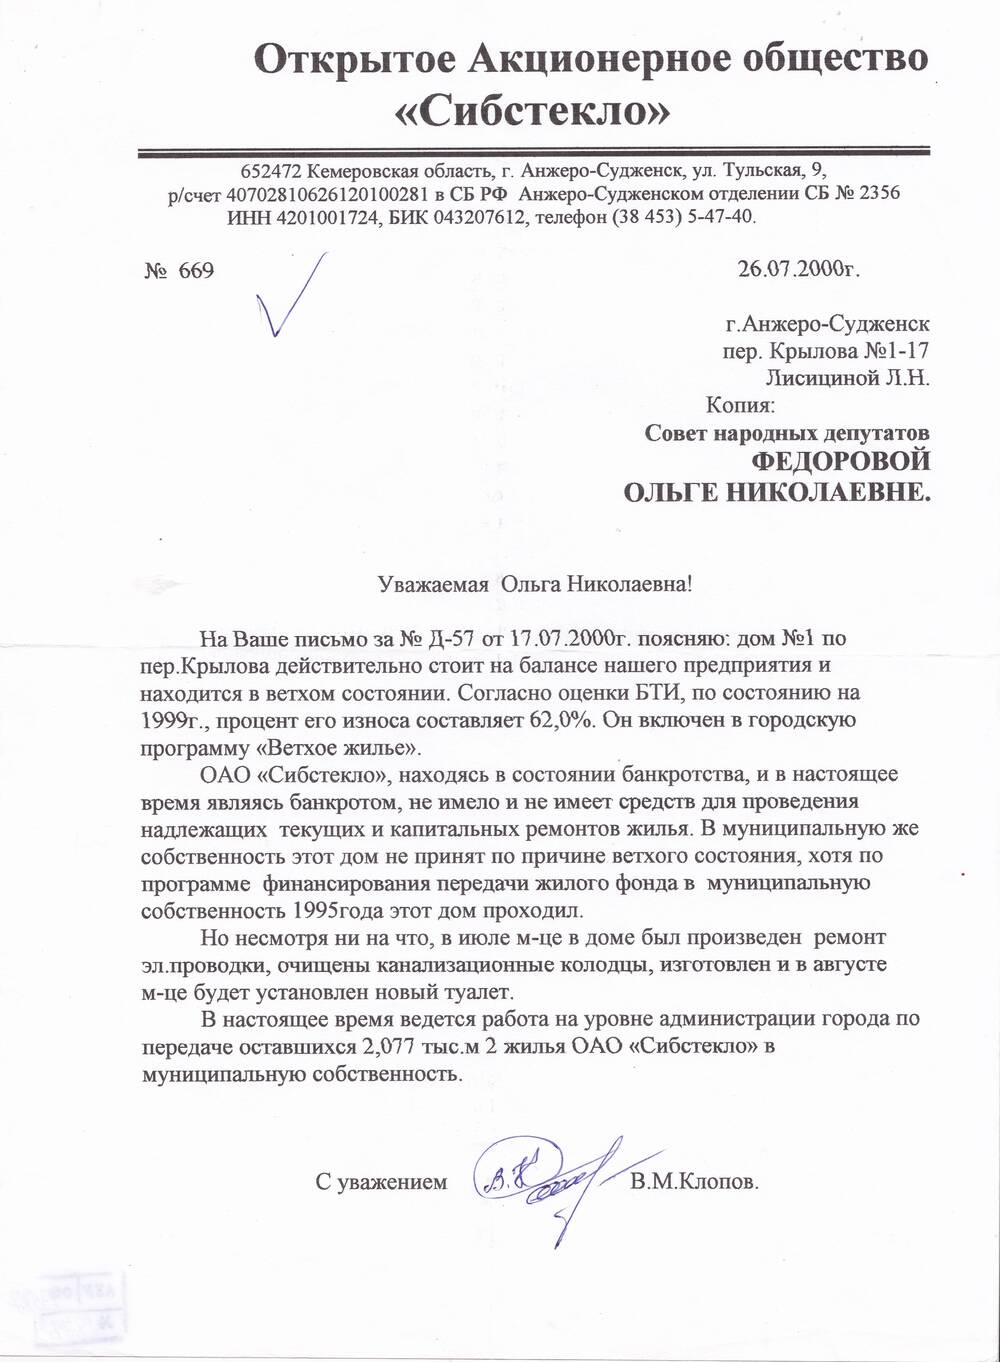 Ответ внешнему управляющему ОАО Сибстекло В.М. Клопова